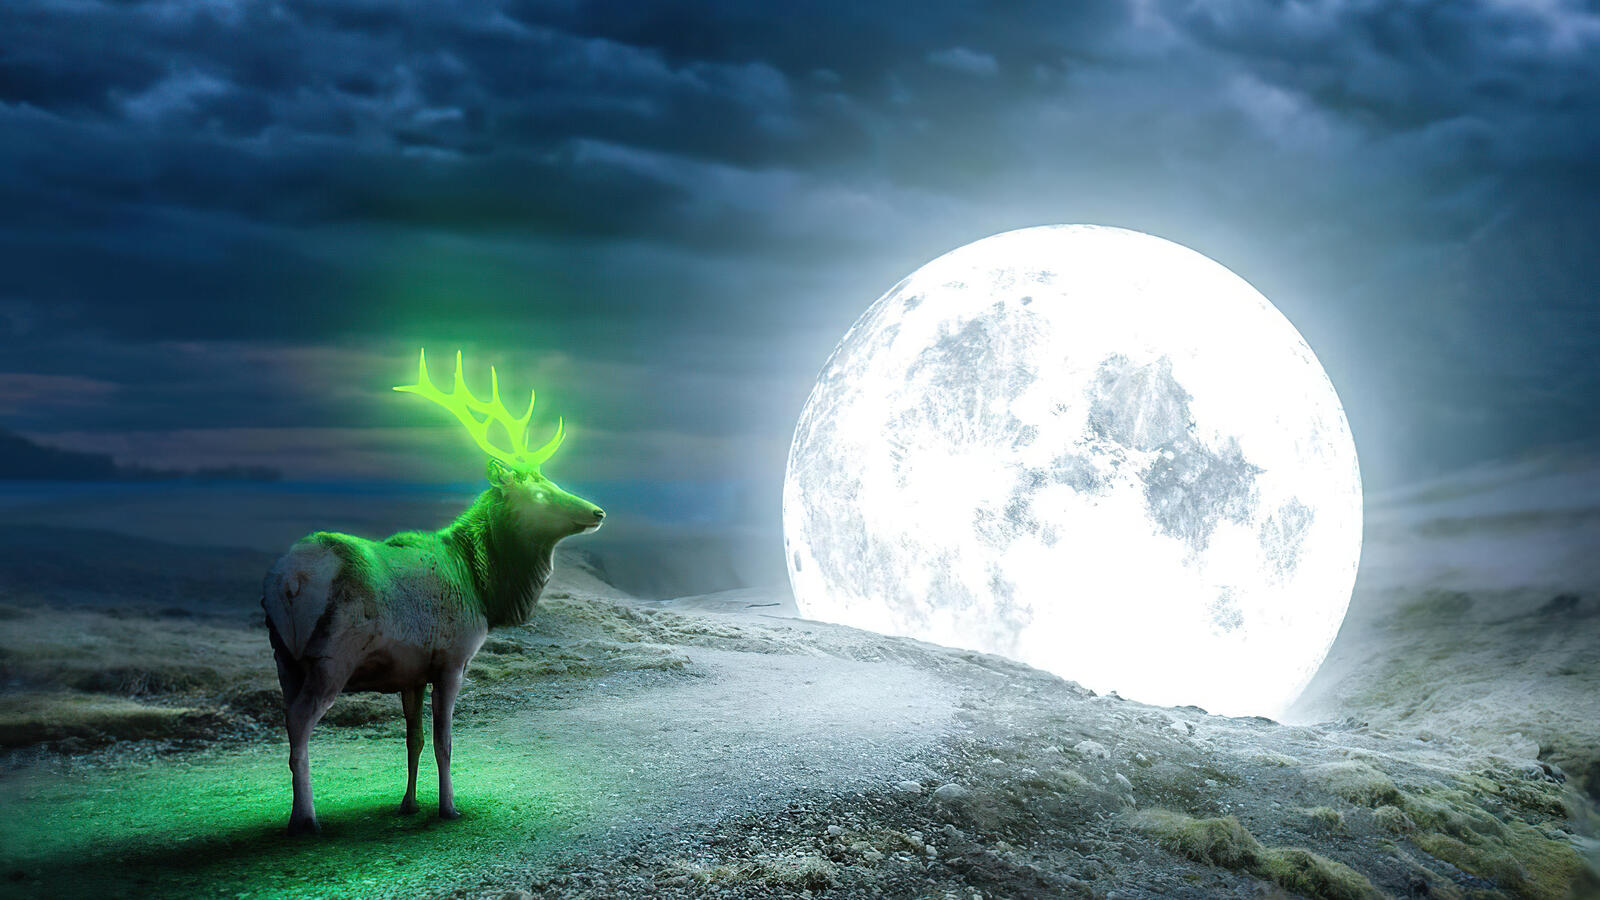 Бесплатное фото Фантастическая фотогорафия с изображением оленя со светящимися зелеными рогами